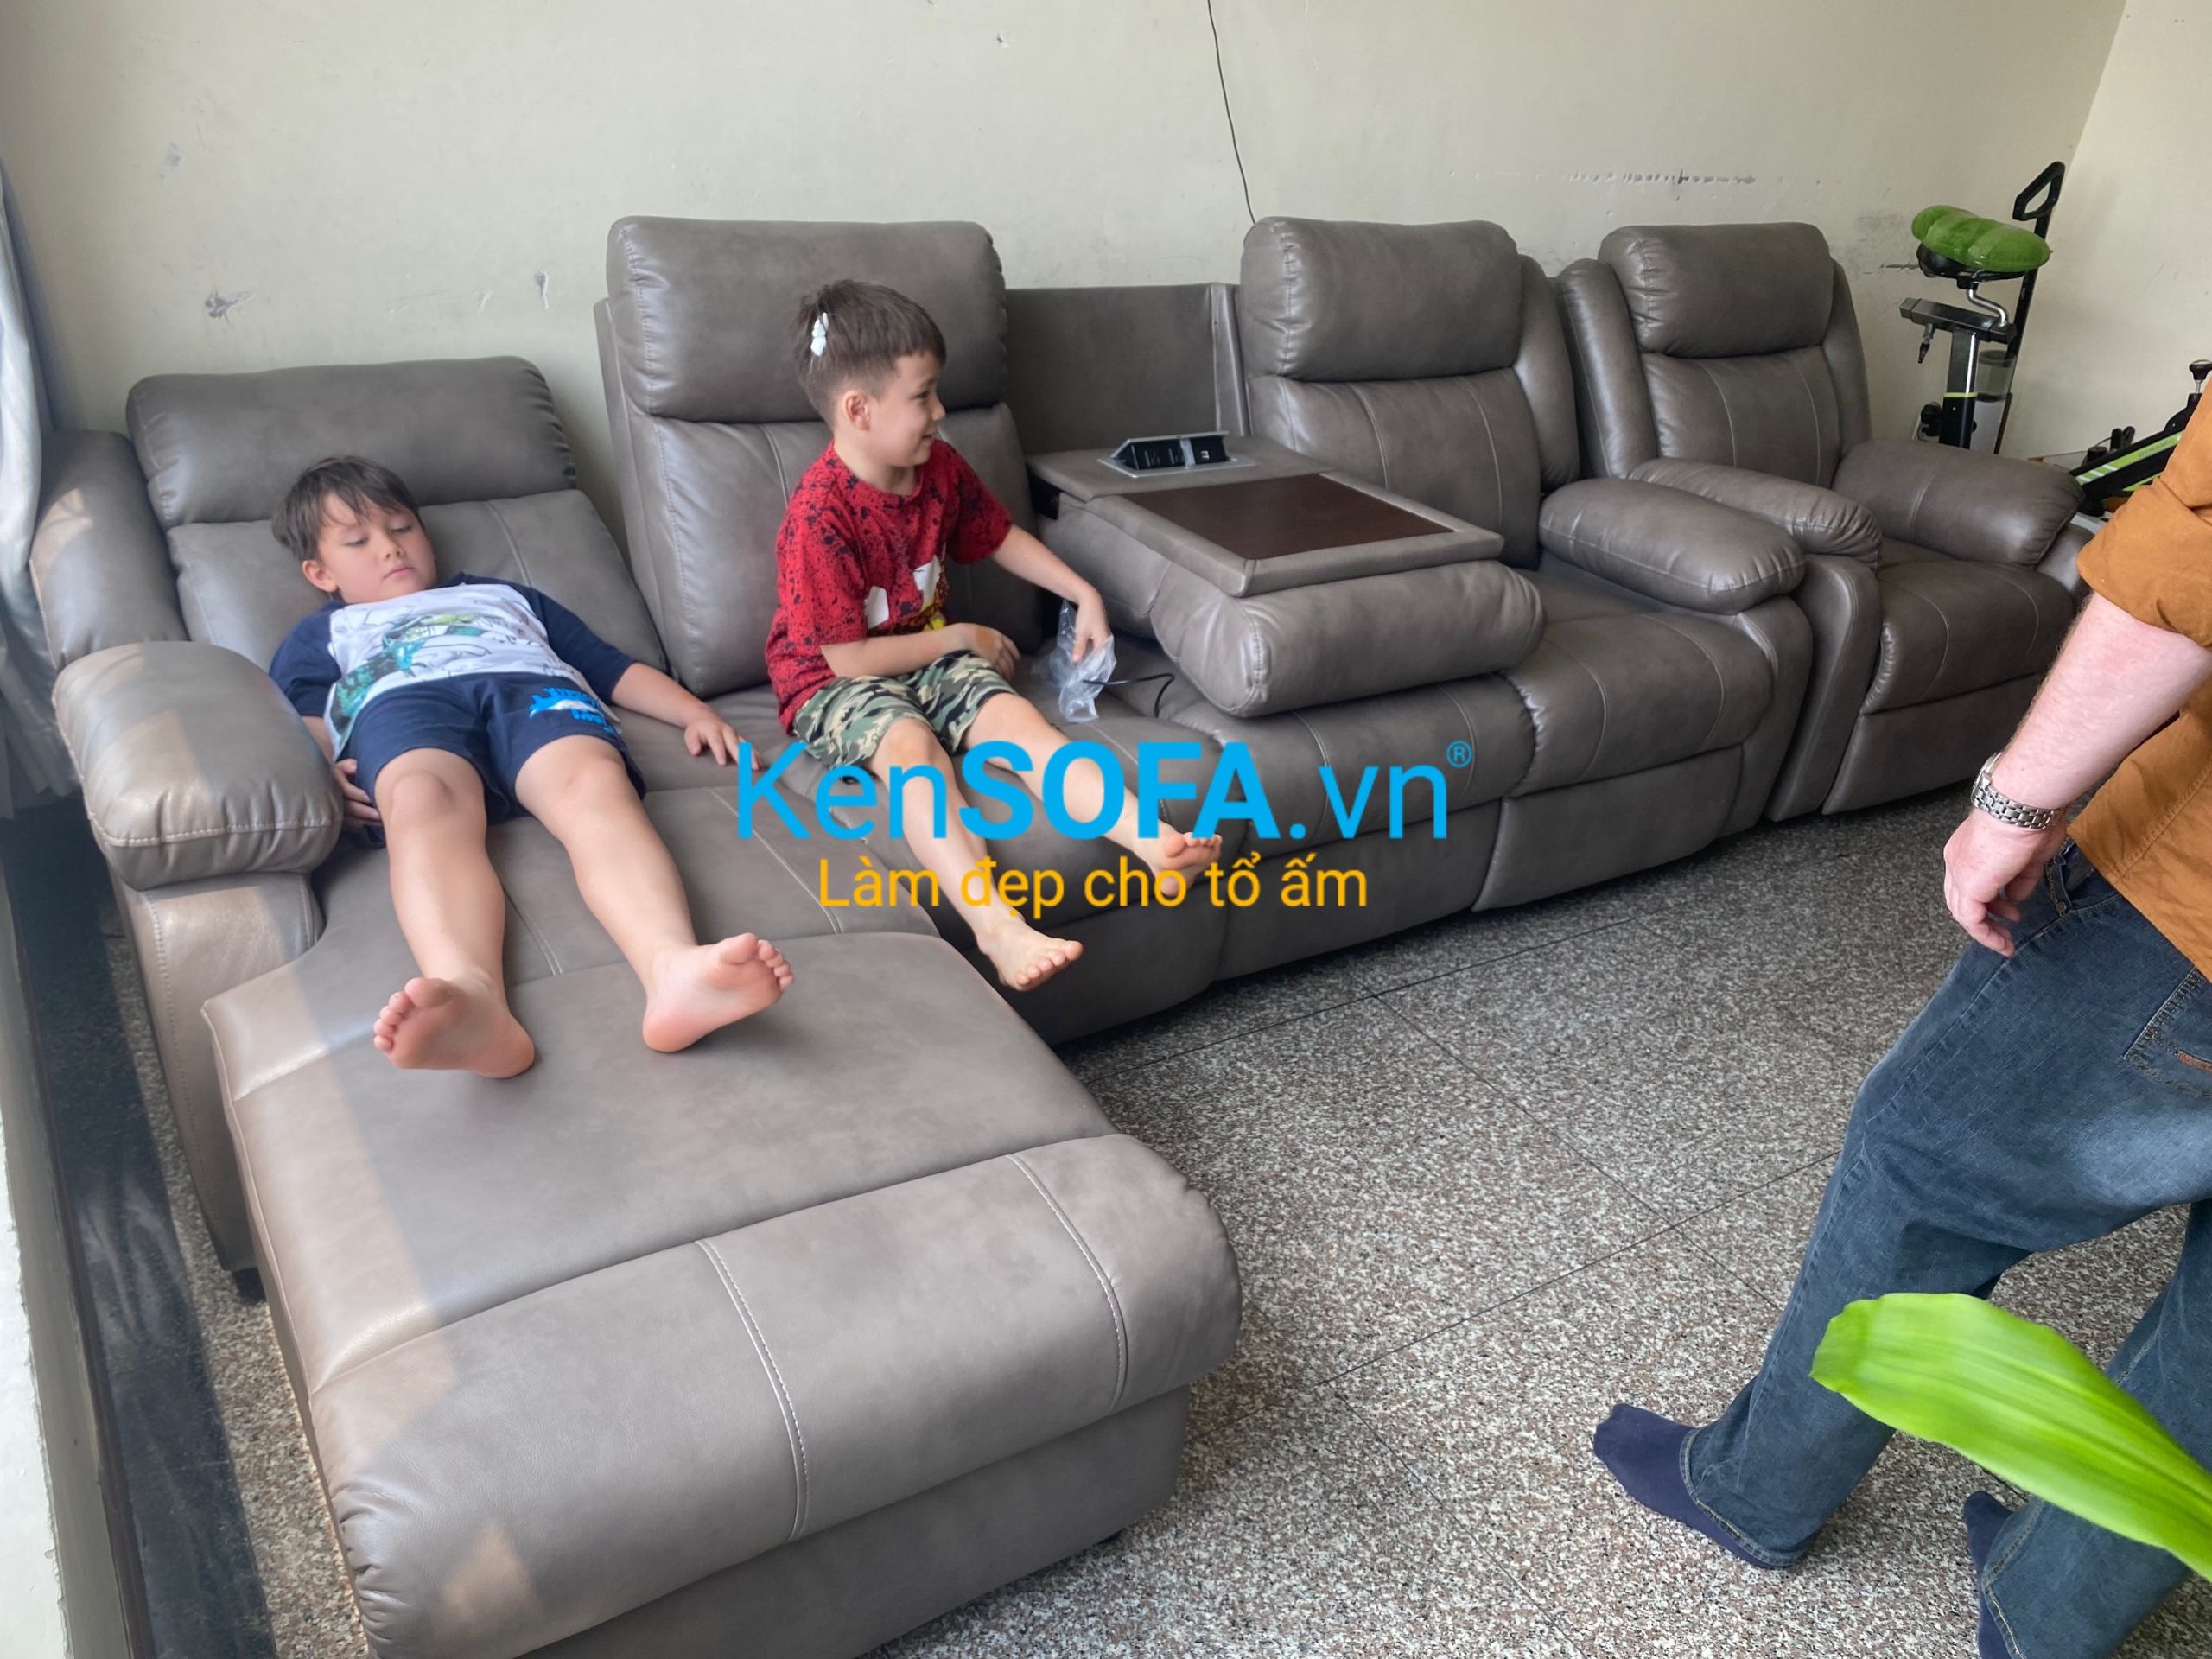 Thanh lý bàn ghế sofa cũ ở Đà Nẵng giá tốt 2017 - Thiên Tiến